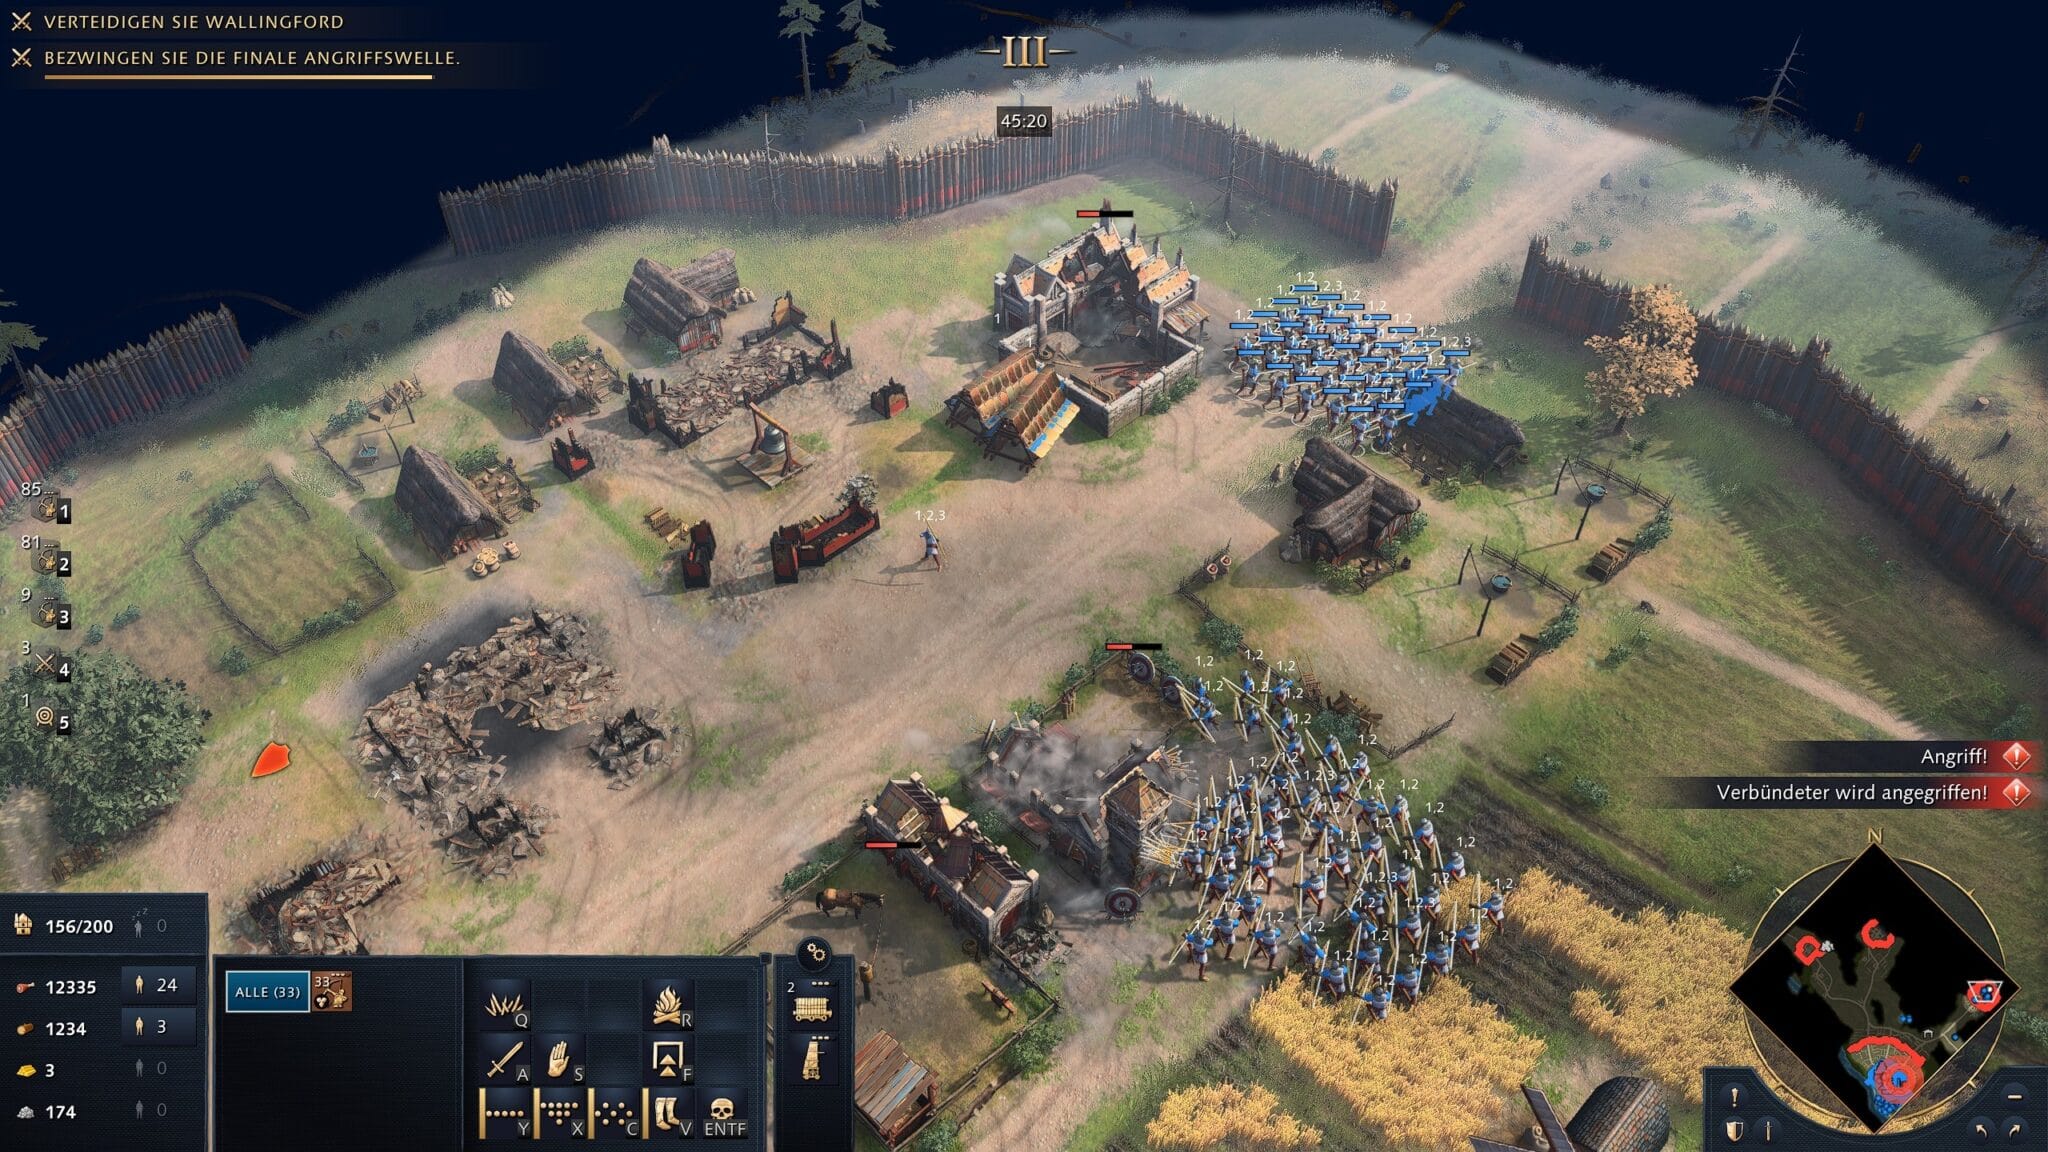 Pour les joueurs en solo, Age of Empires 4 ne propose actuellement que la campagne. Ici, nous avons démantelé les camps ennemis extrêmement bien défendus, alors que nous étions censés ne défendre que la ville.